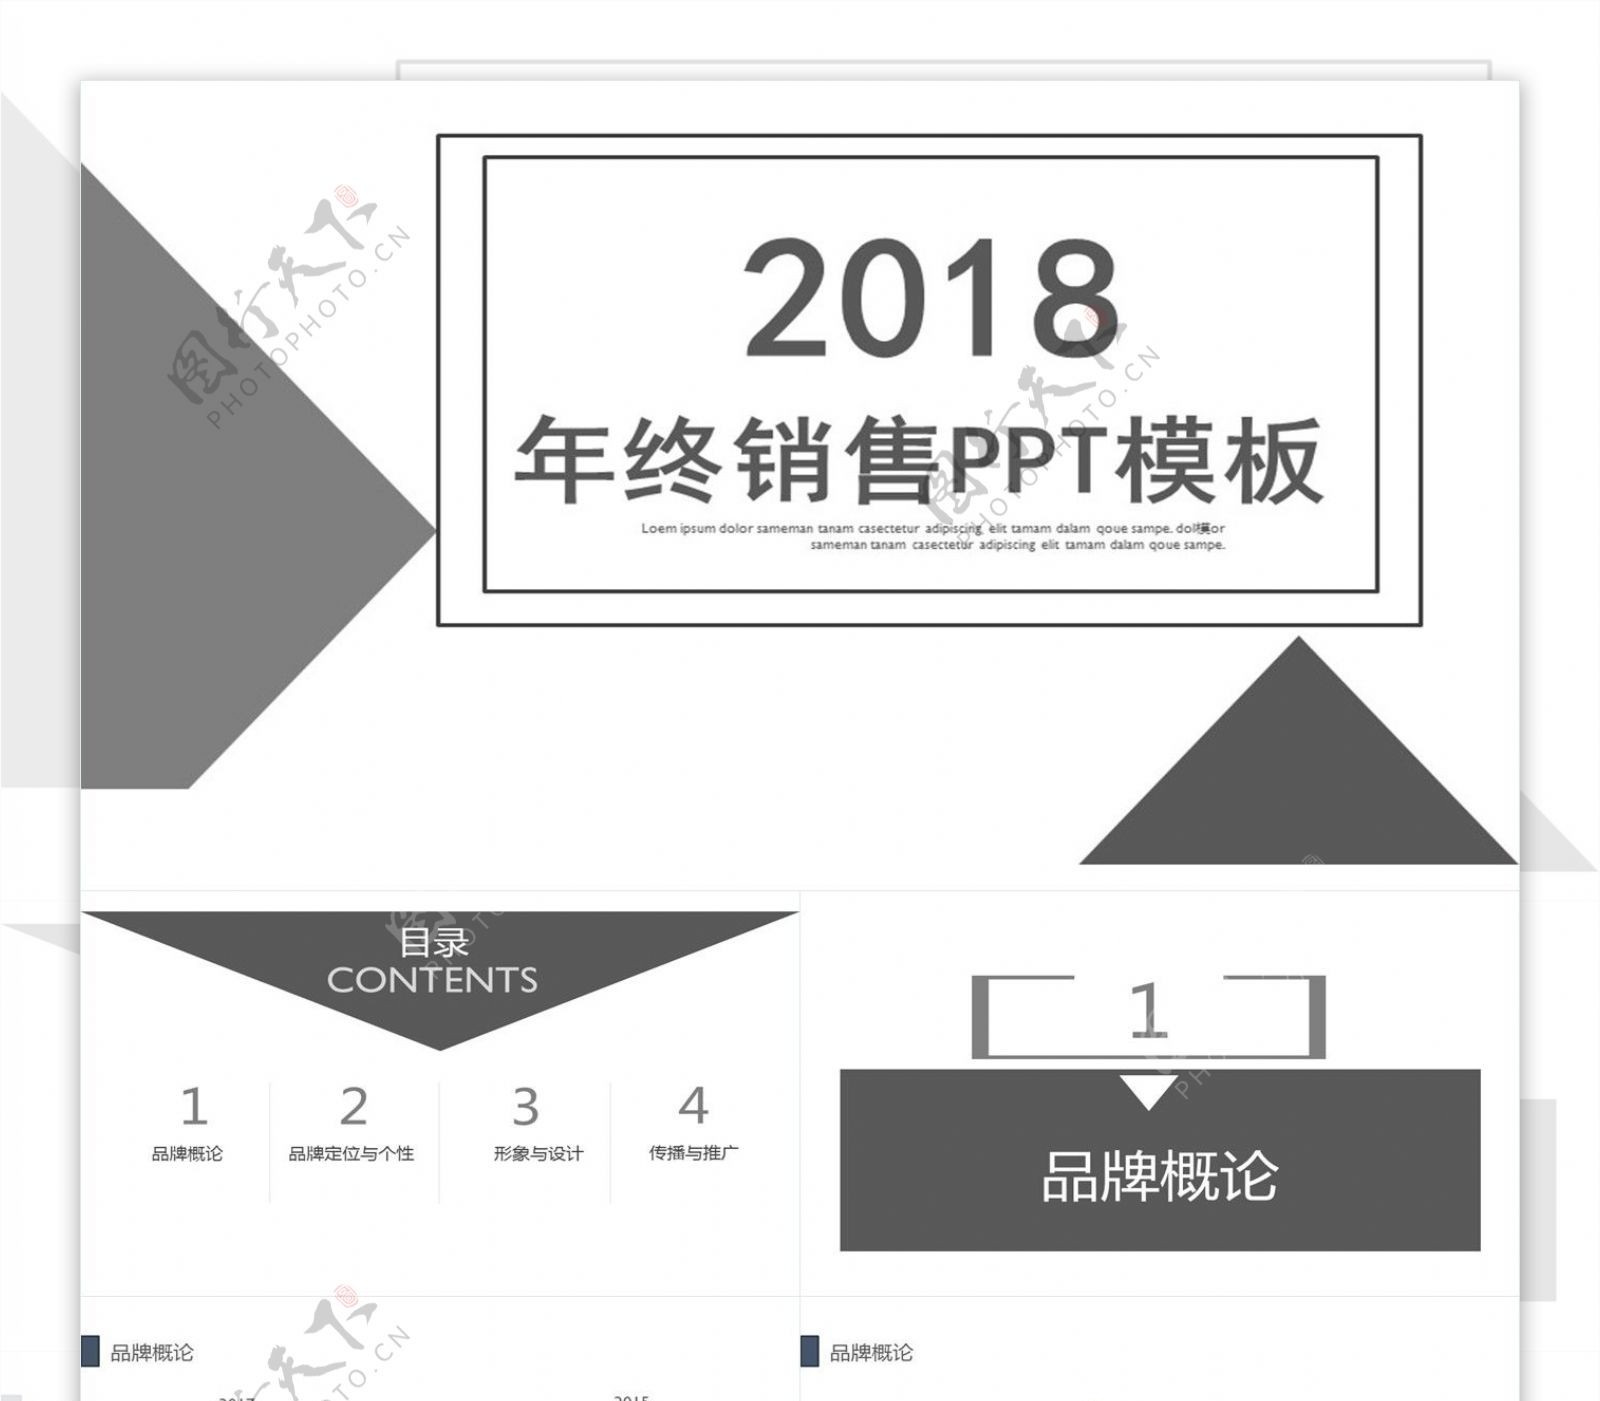 2018年终销售PPT模板